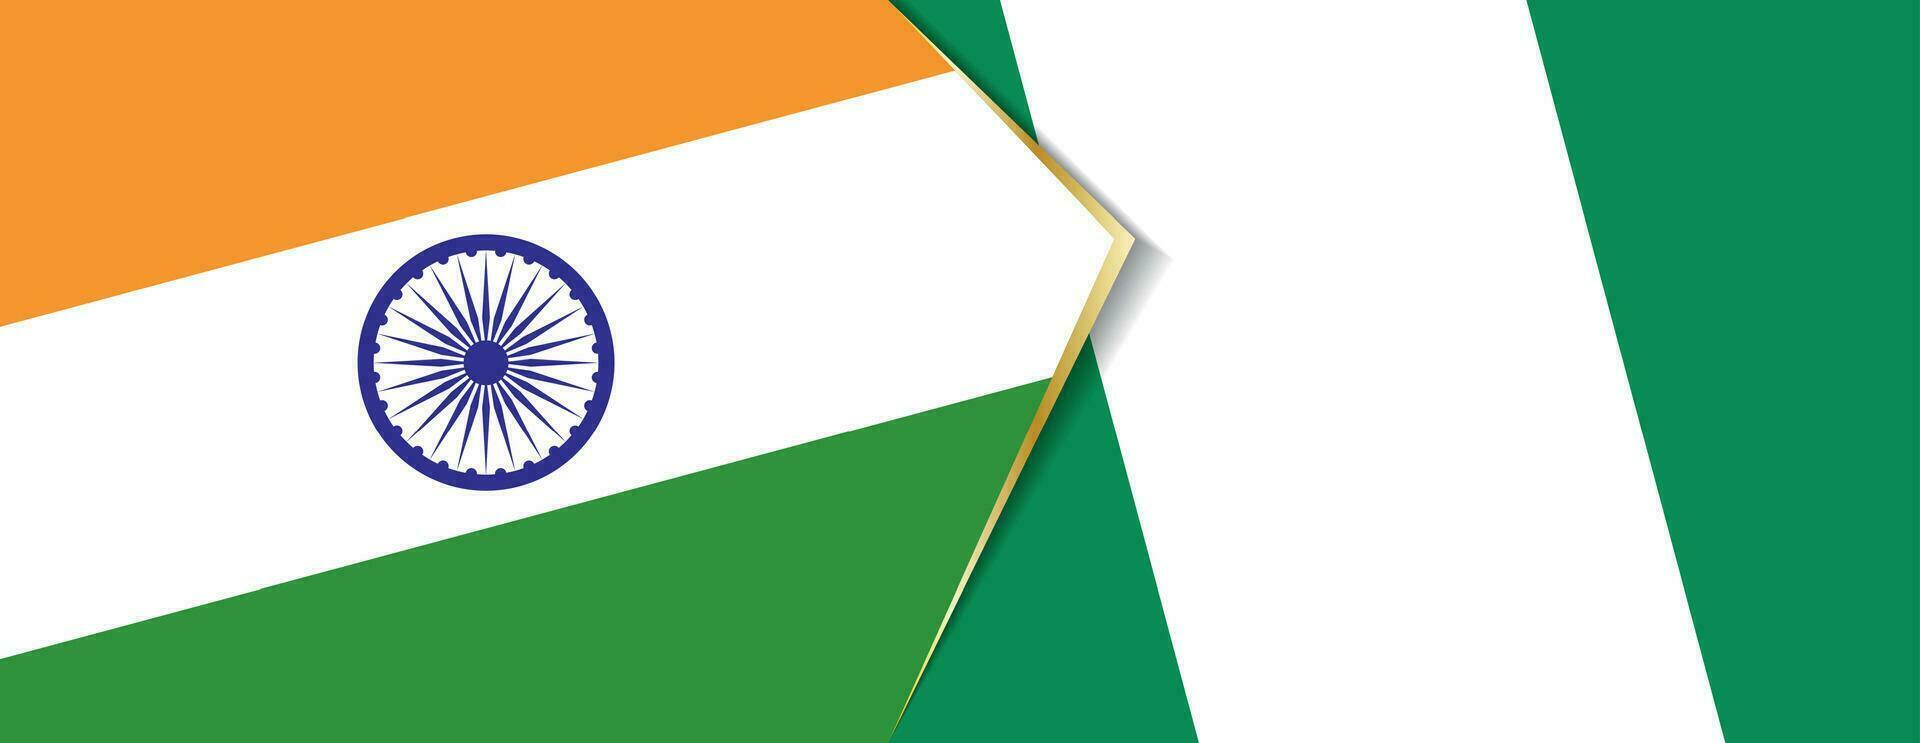 Indien och nigeria flaggor, två vektor flaggor.